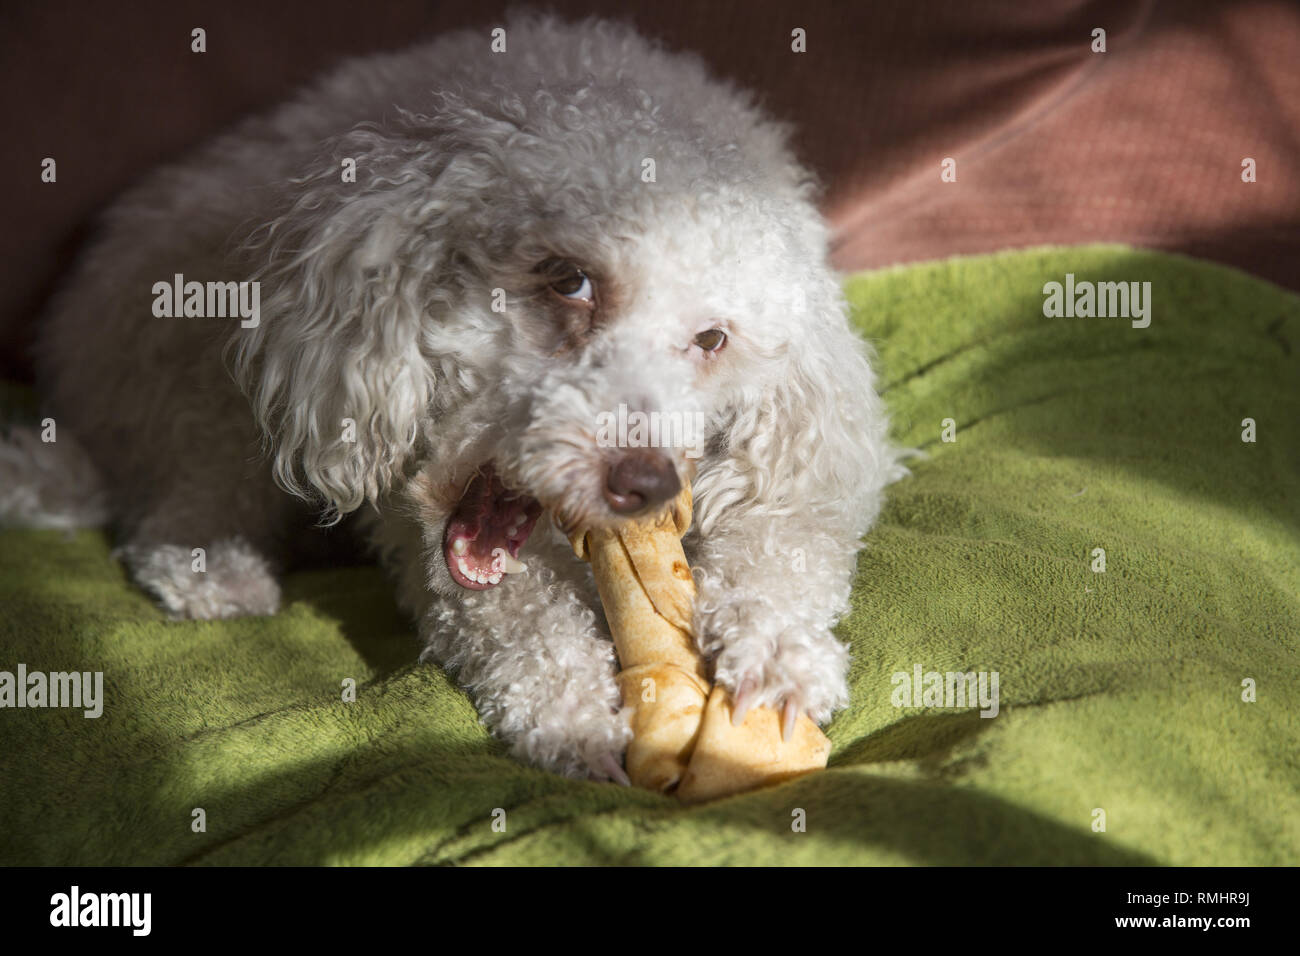 Hund nagt an einem rawhide Knochen. Stockfoto